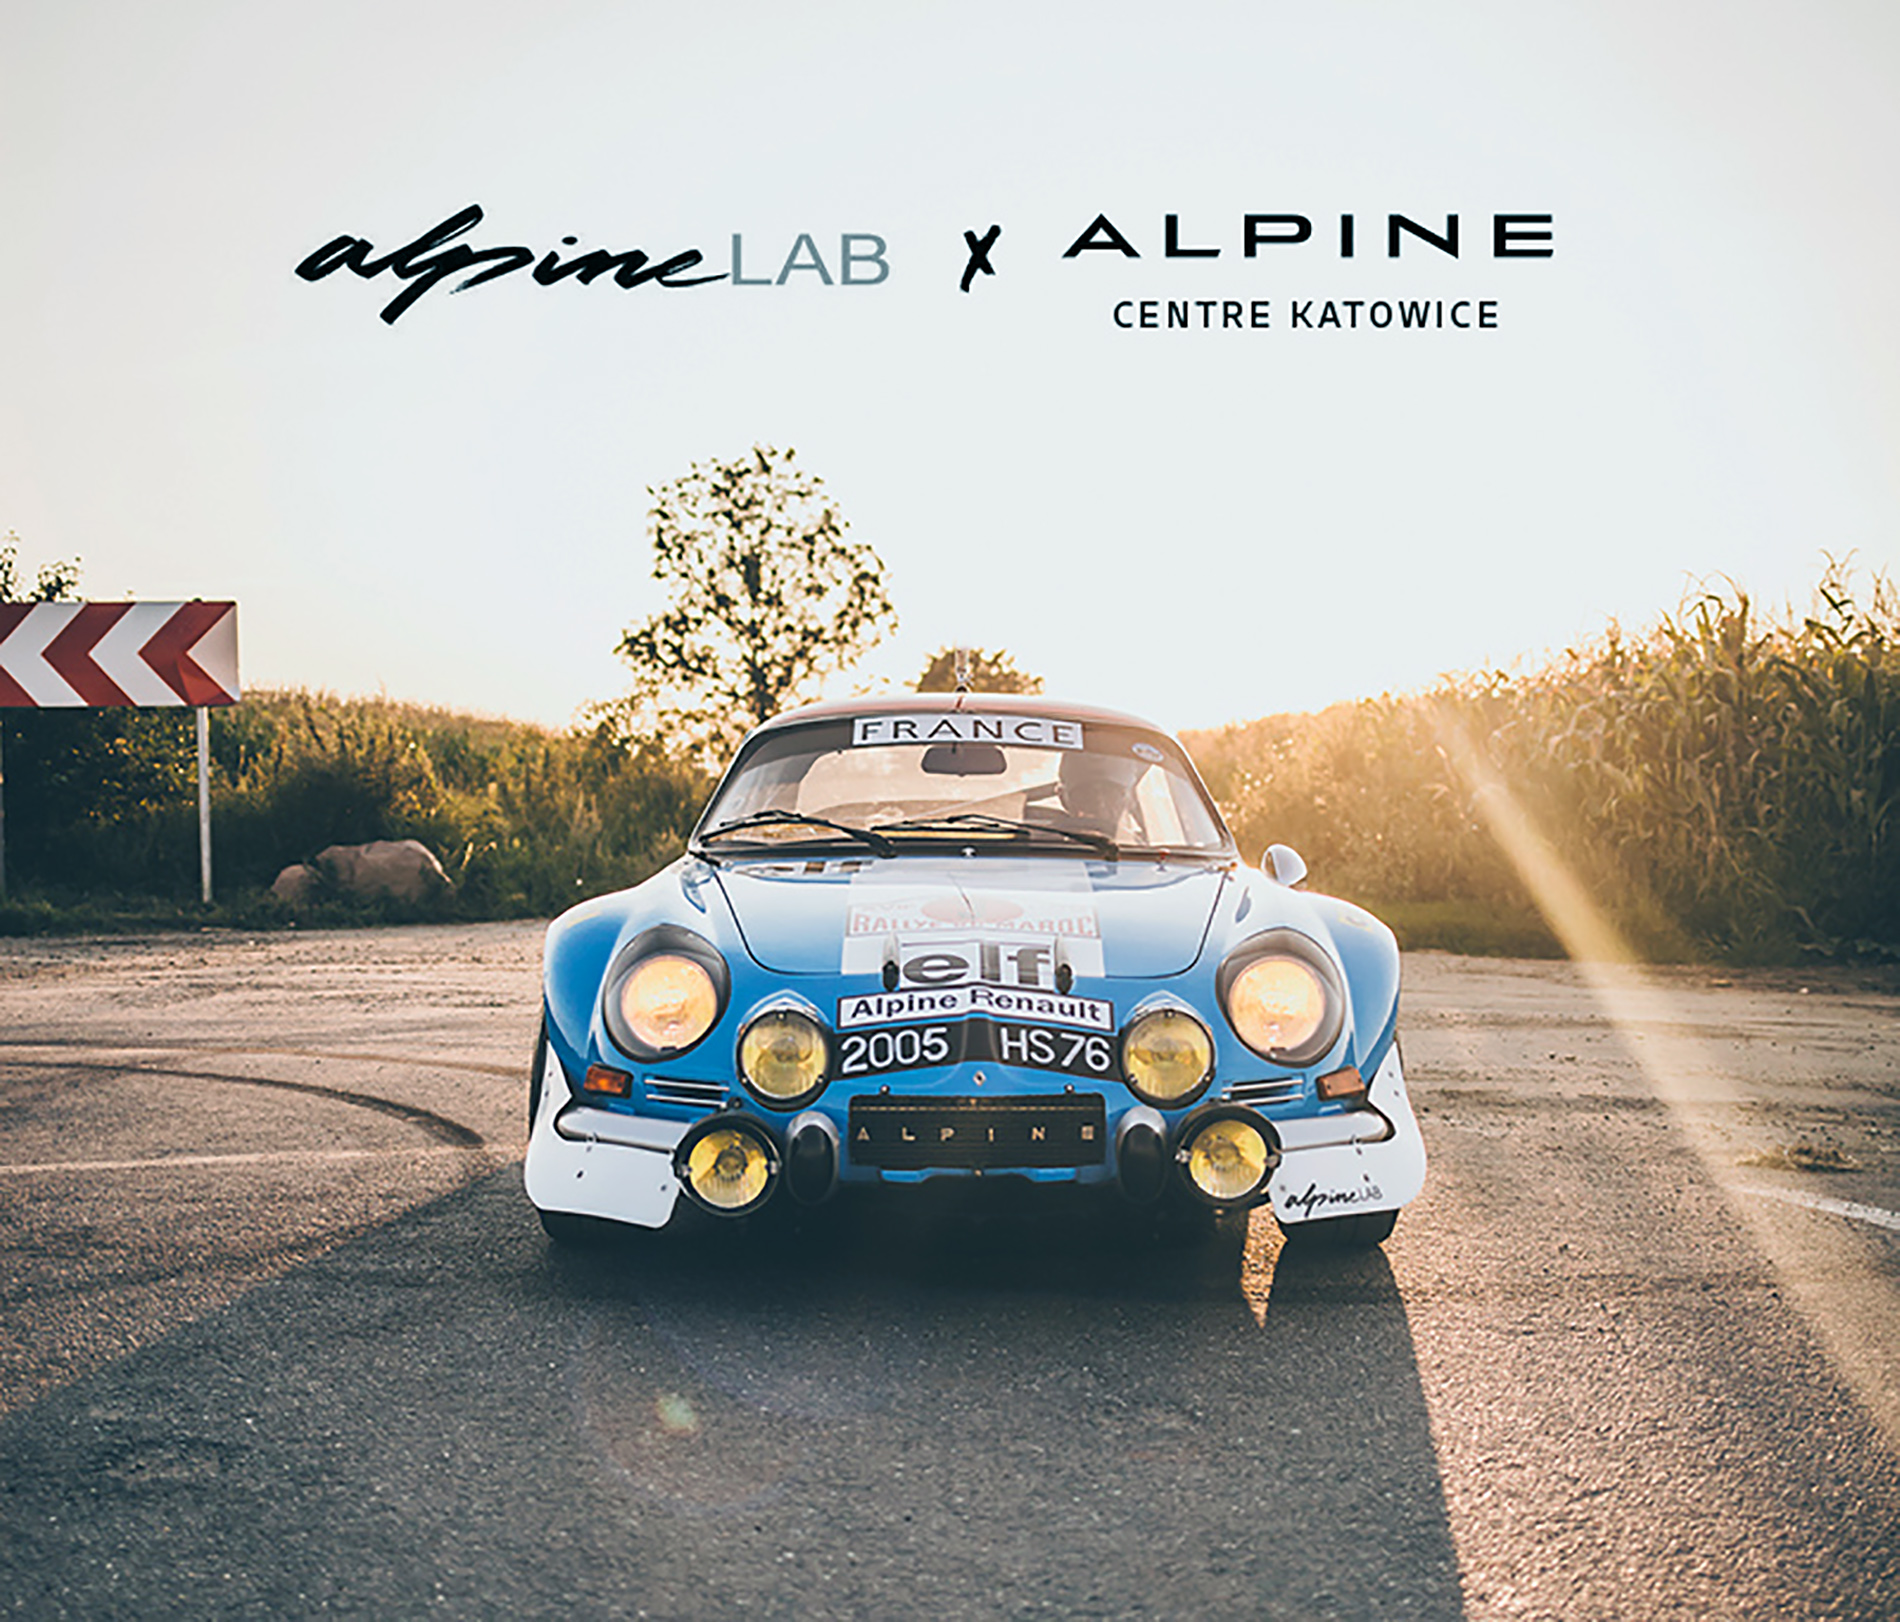 Alpine Katowice nawiązuje współpracę ze światowej sławy kolekcjonerem marki Alpine